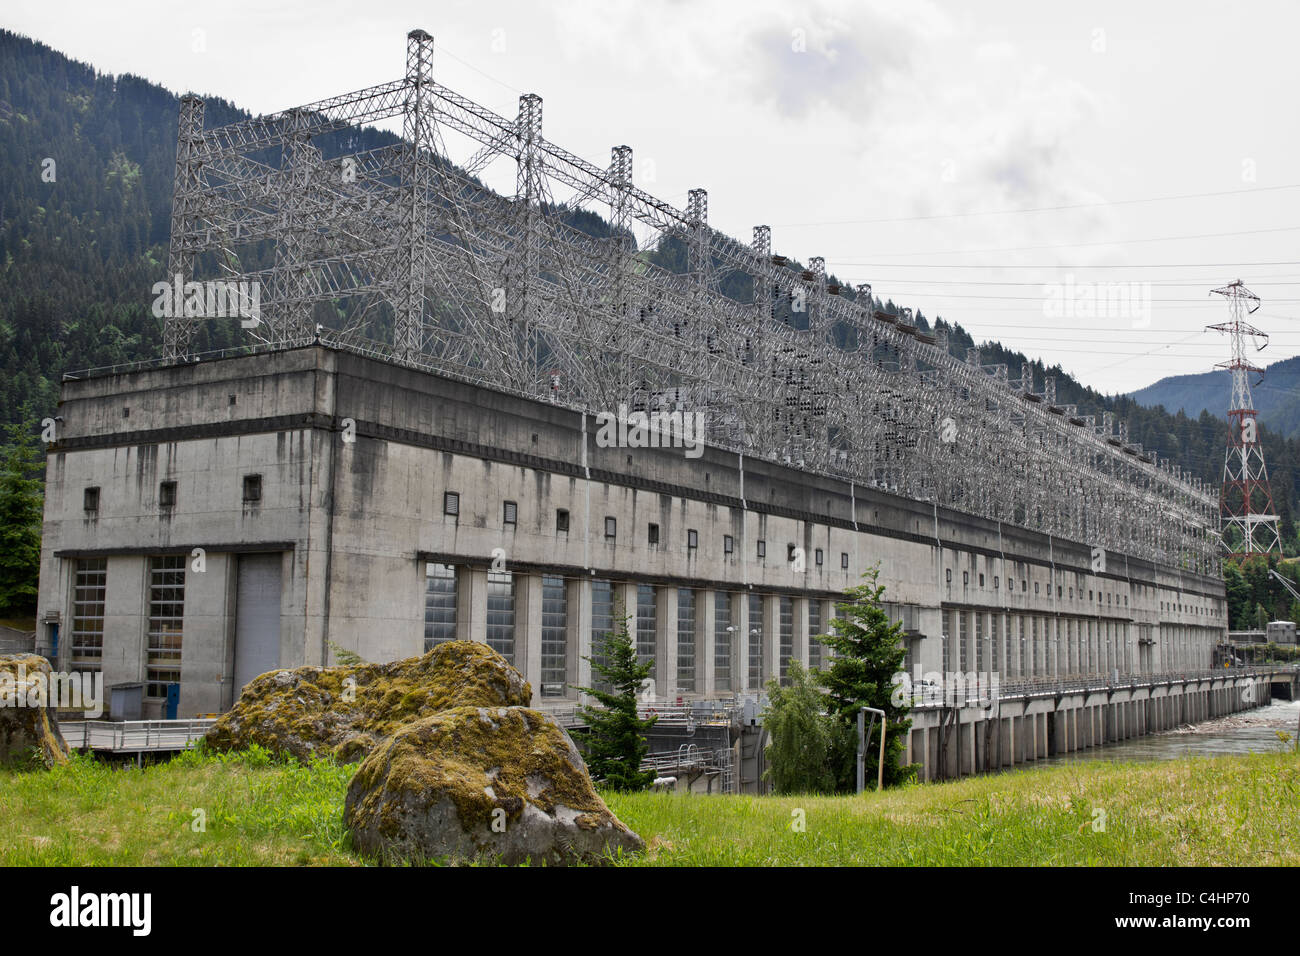 Bloqueo de Bonneville y Dam Powerhouse Hito Histórico Nacional Foto de stock